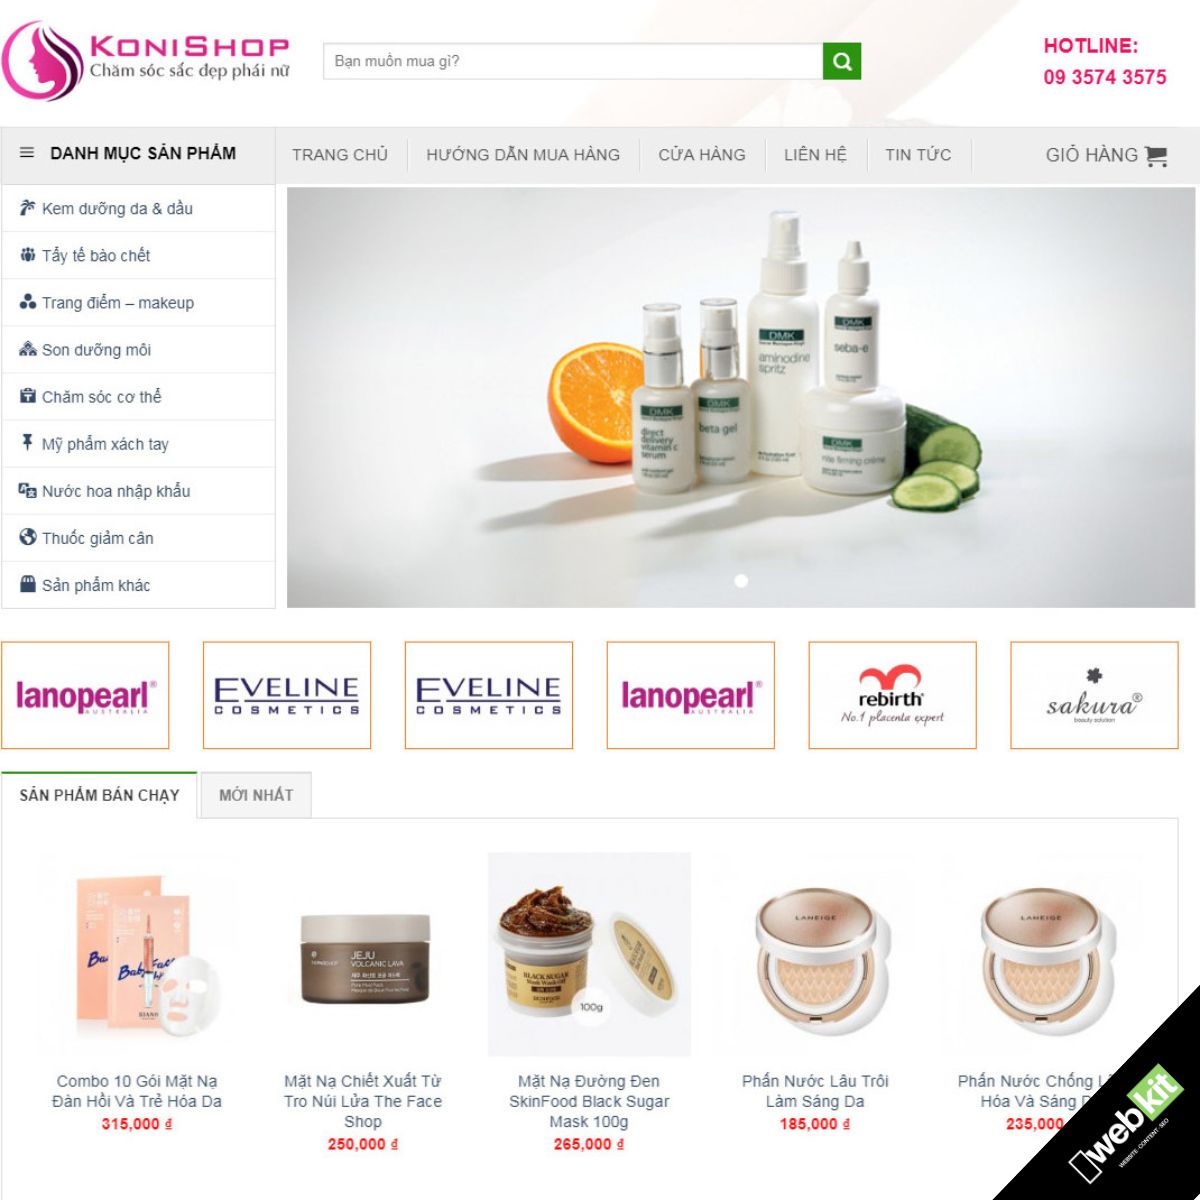 Thiết kế website bán mỹ phẩm chăm sóc da tóc, trang điểm các loại online - WebKit 5518